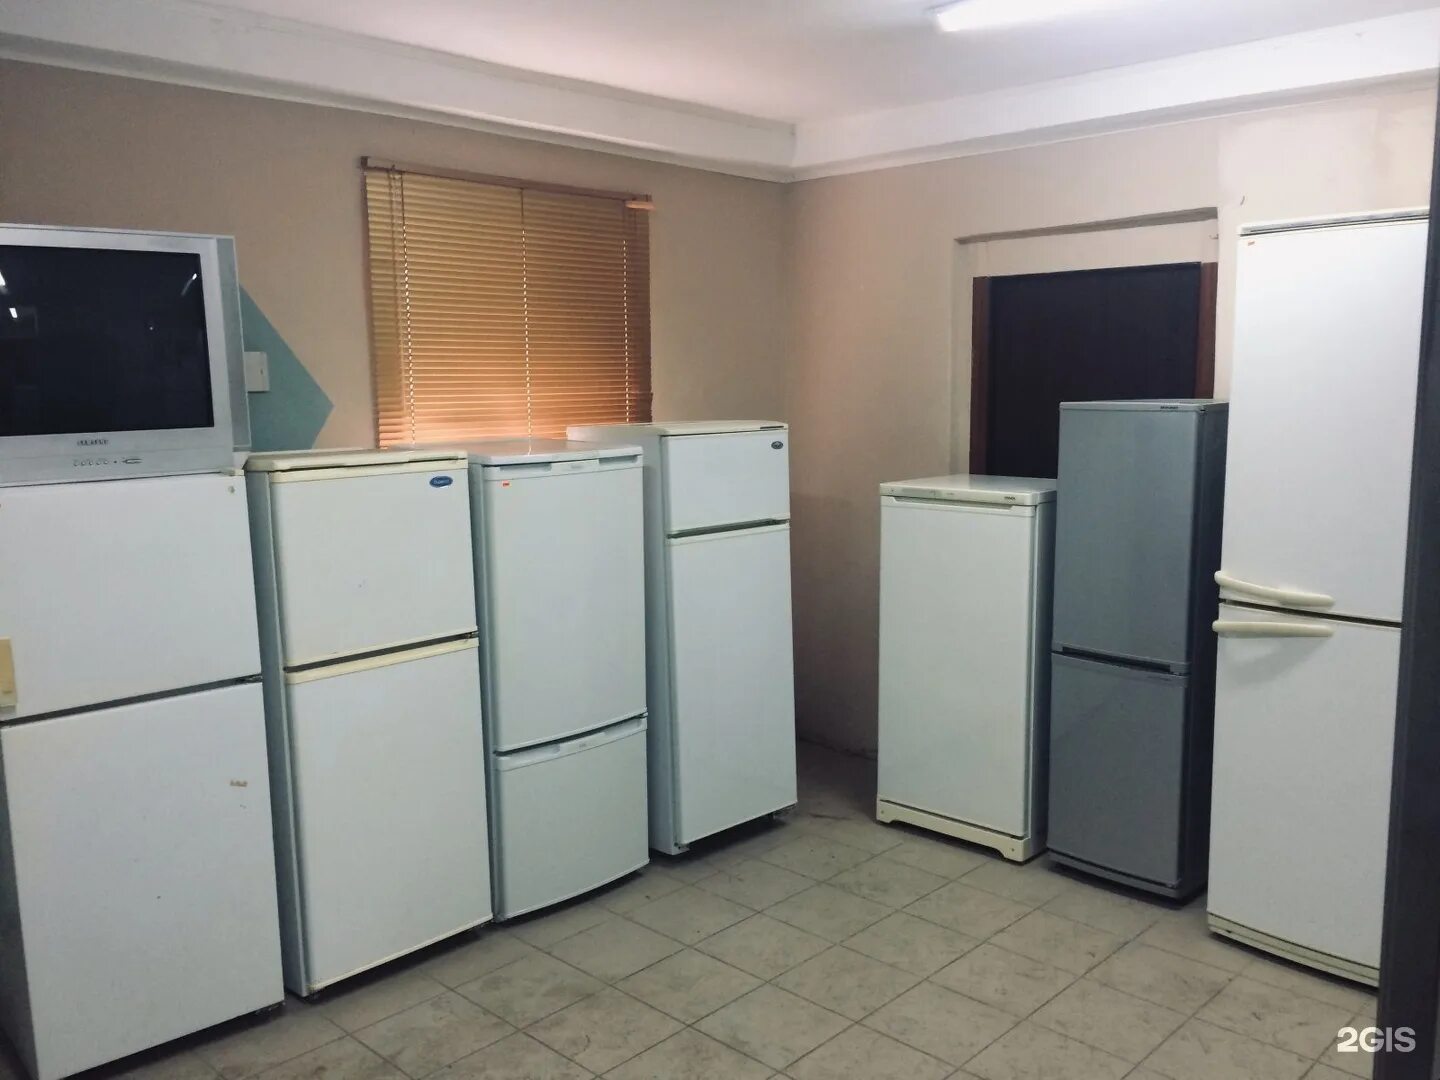 Холодильник б/у. Много холодильников б/у. Холодильник в Алматы. Купить холодильник бу на Отрадном. Б у бывшее употребление